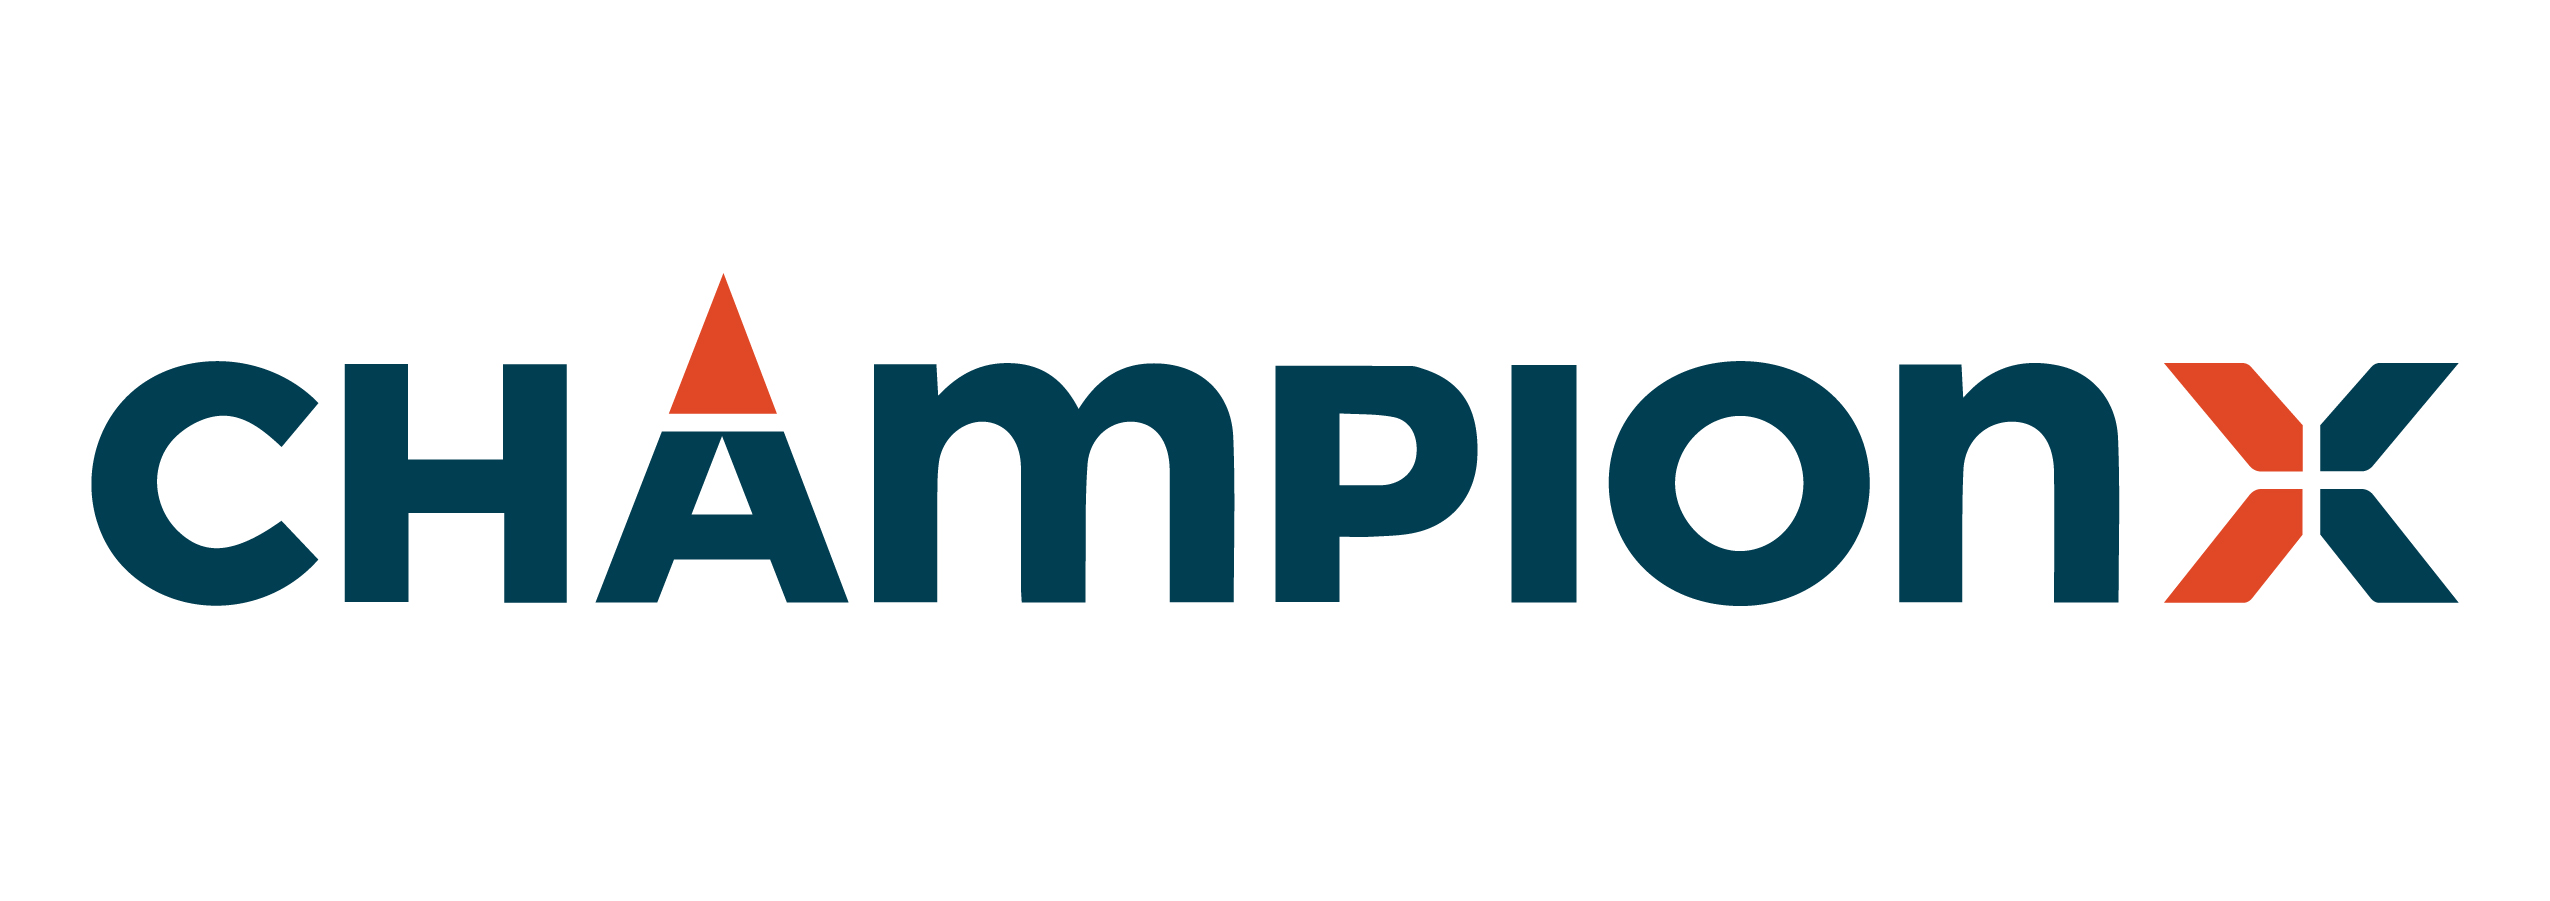 ChampionX Corp. logo